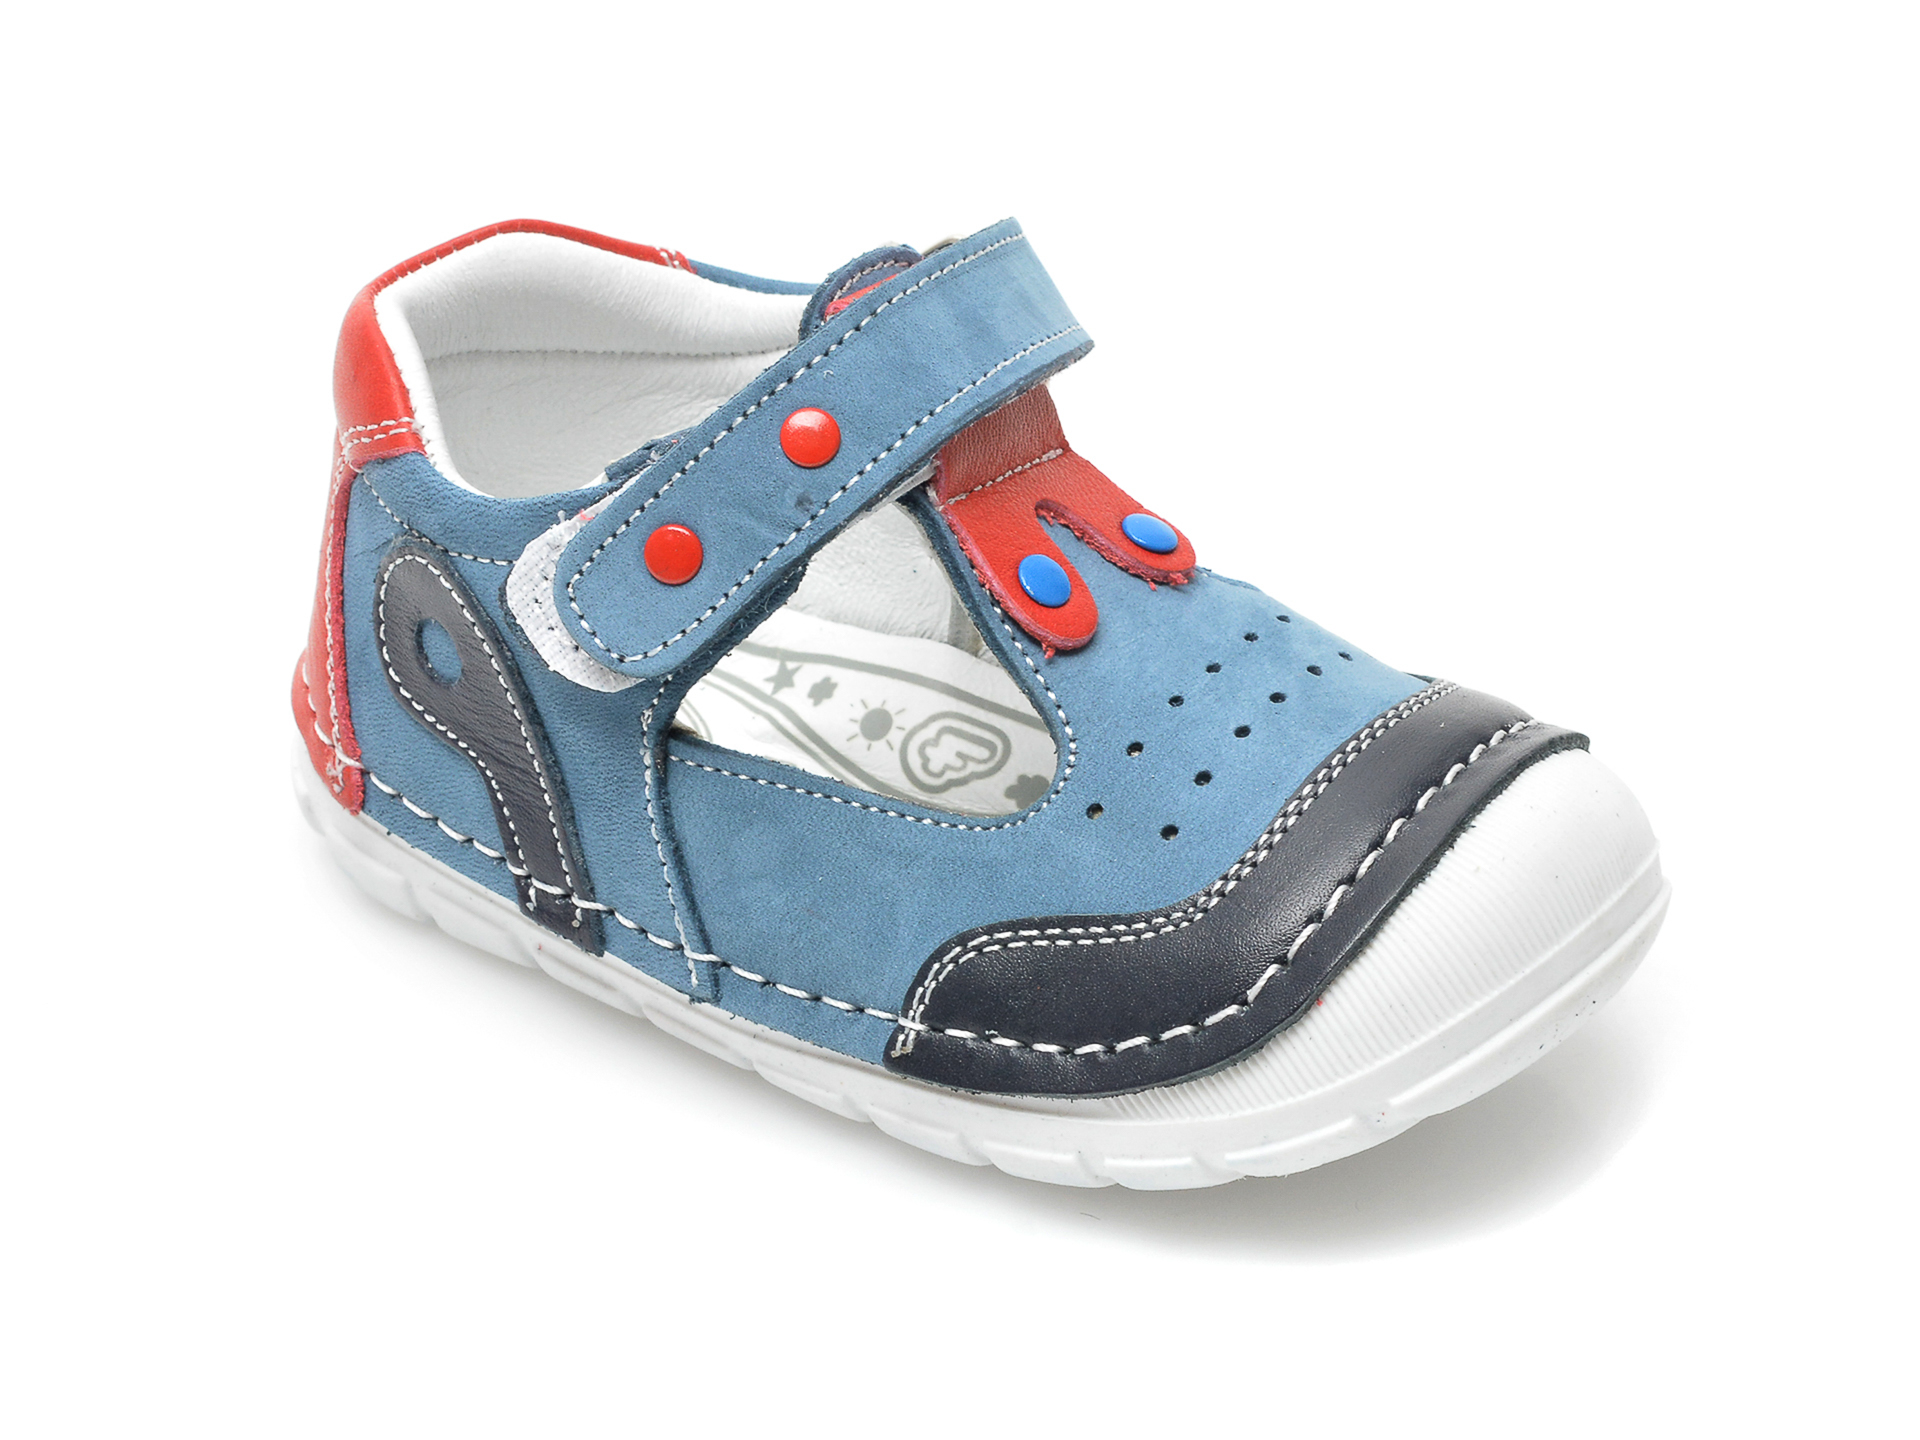 Pantofi POLARIS albastri, 520151, din piele naturala /copii/incaltaminte